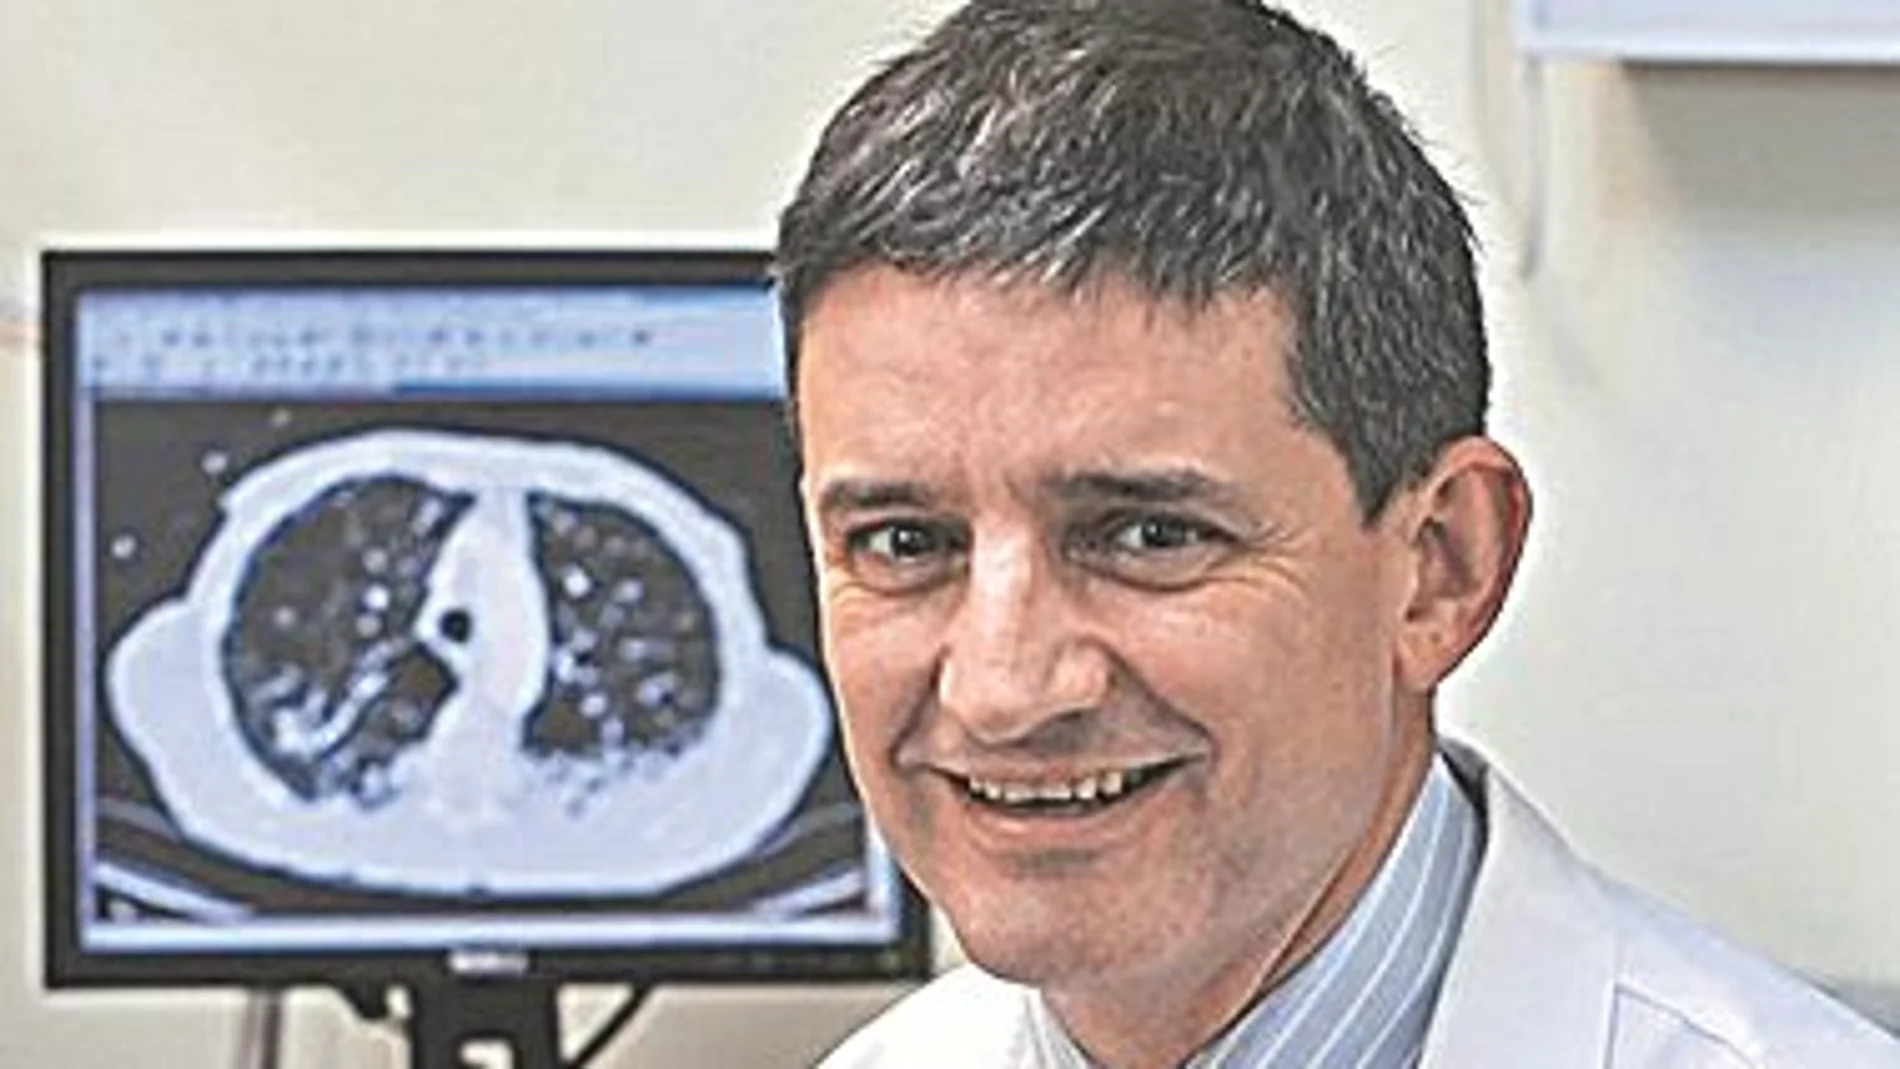 Dr. José María Echave-Sustaet / Jefe del Servicio de Neumología de Hospital Universitario Quirón Salud Madrid